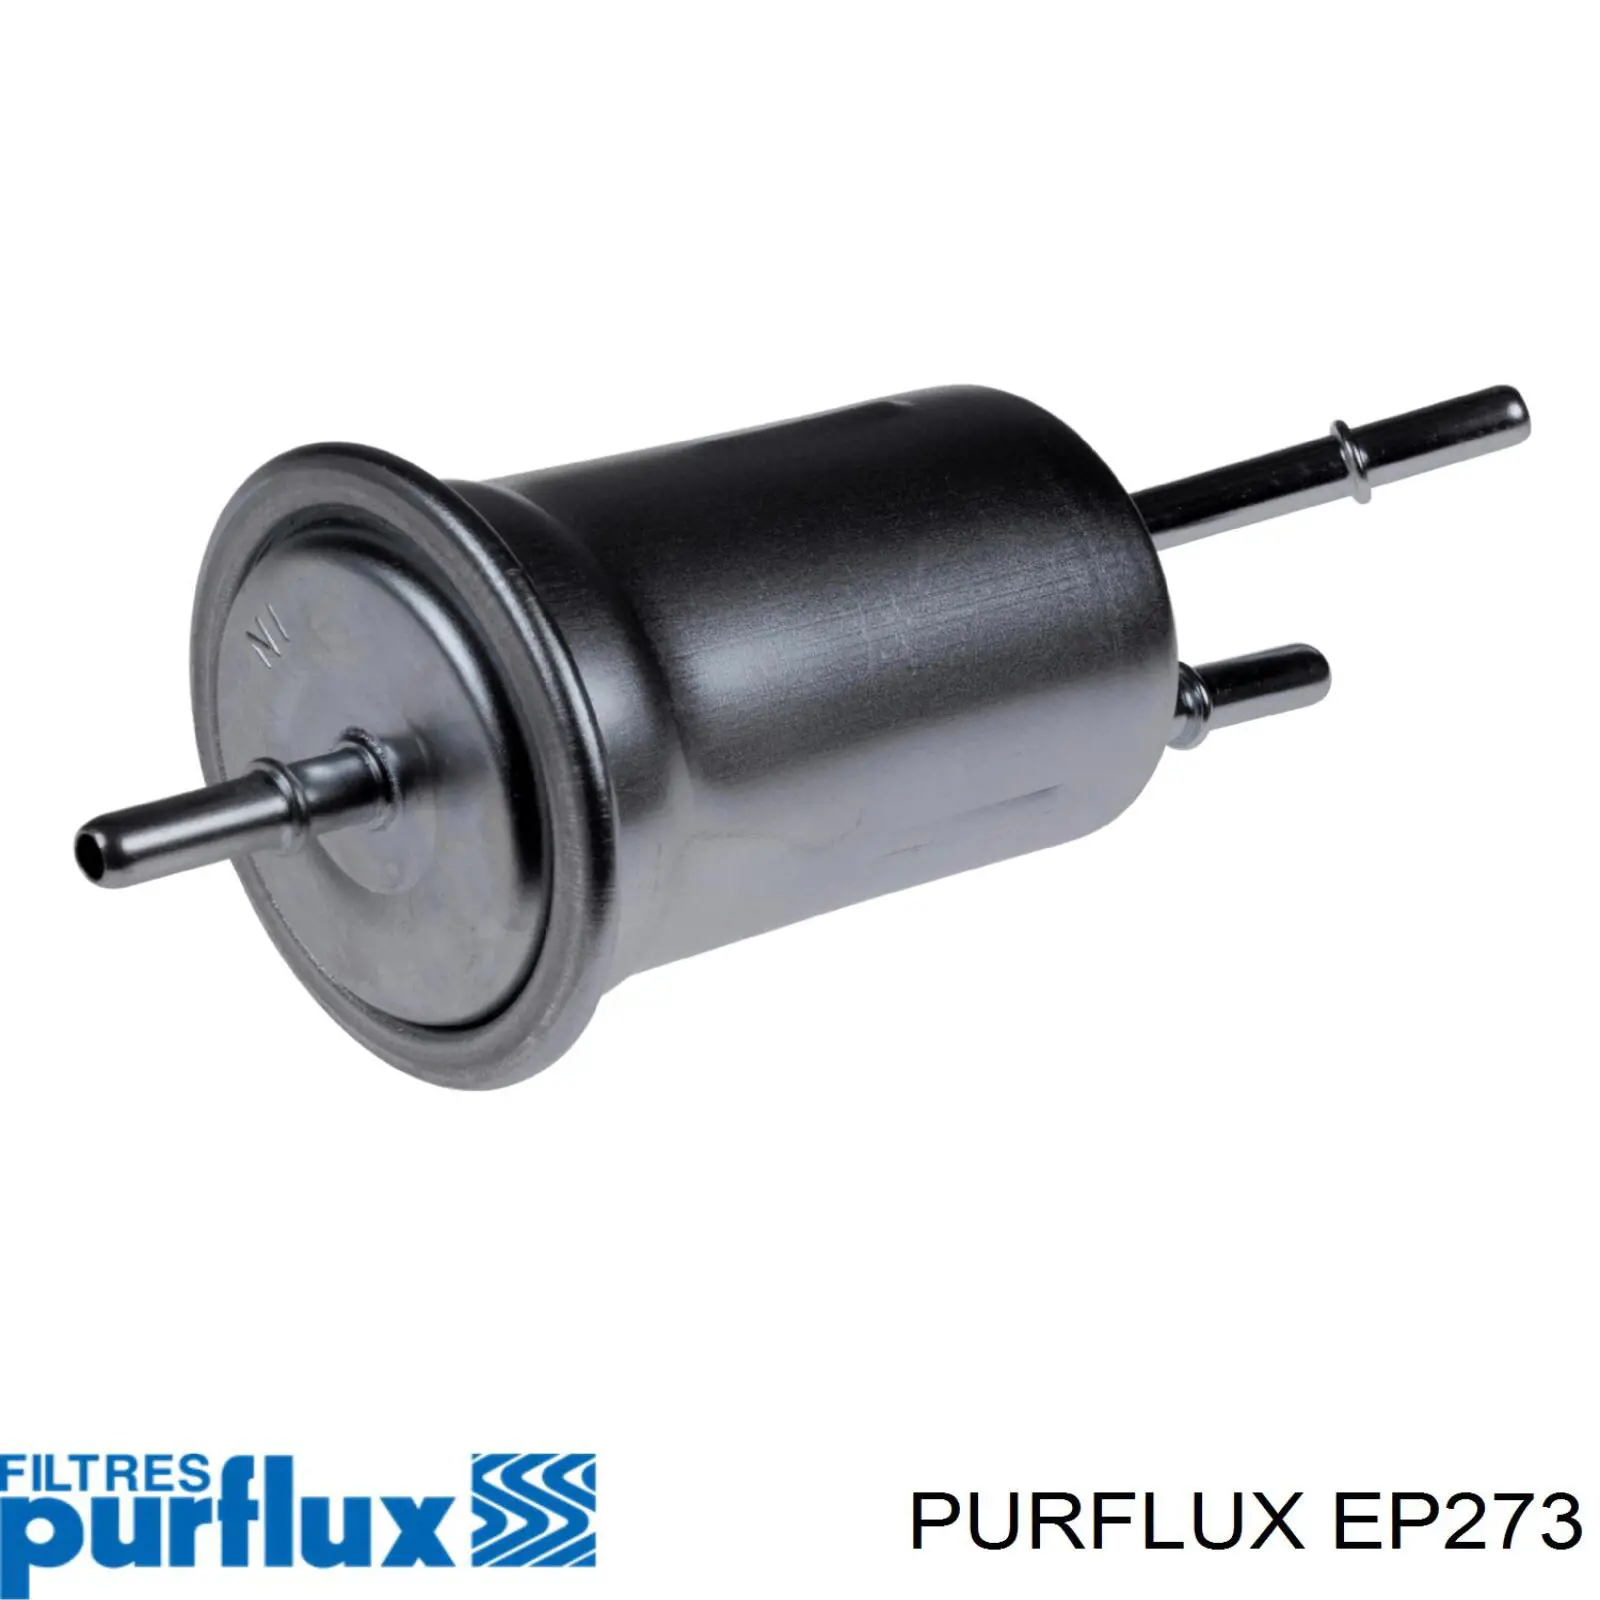 EP273 Purflux filtro de combustible